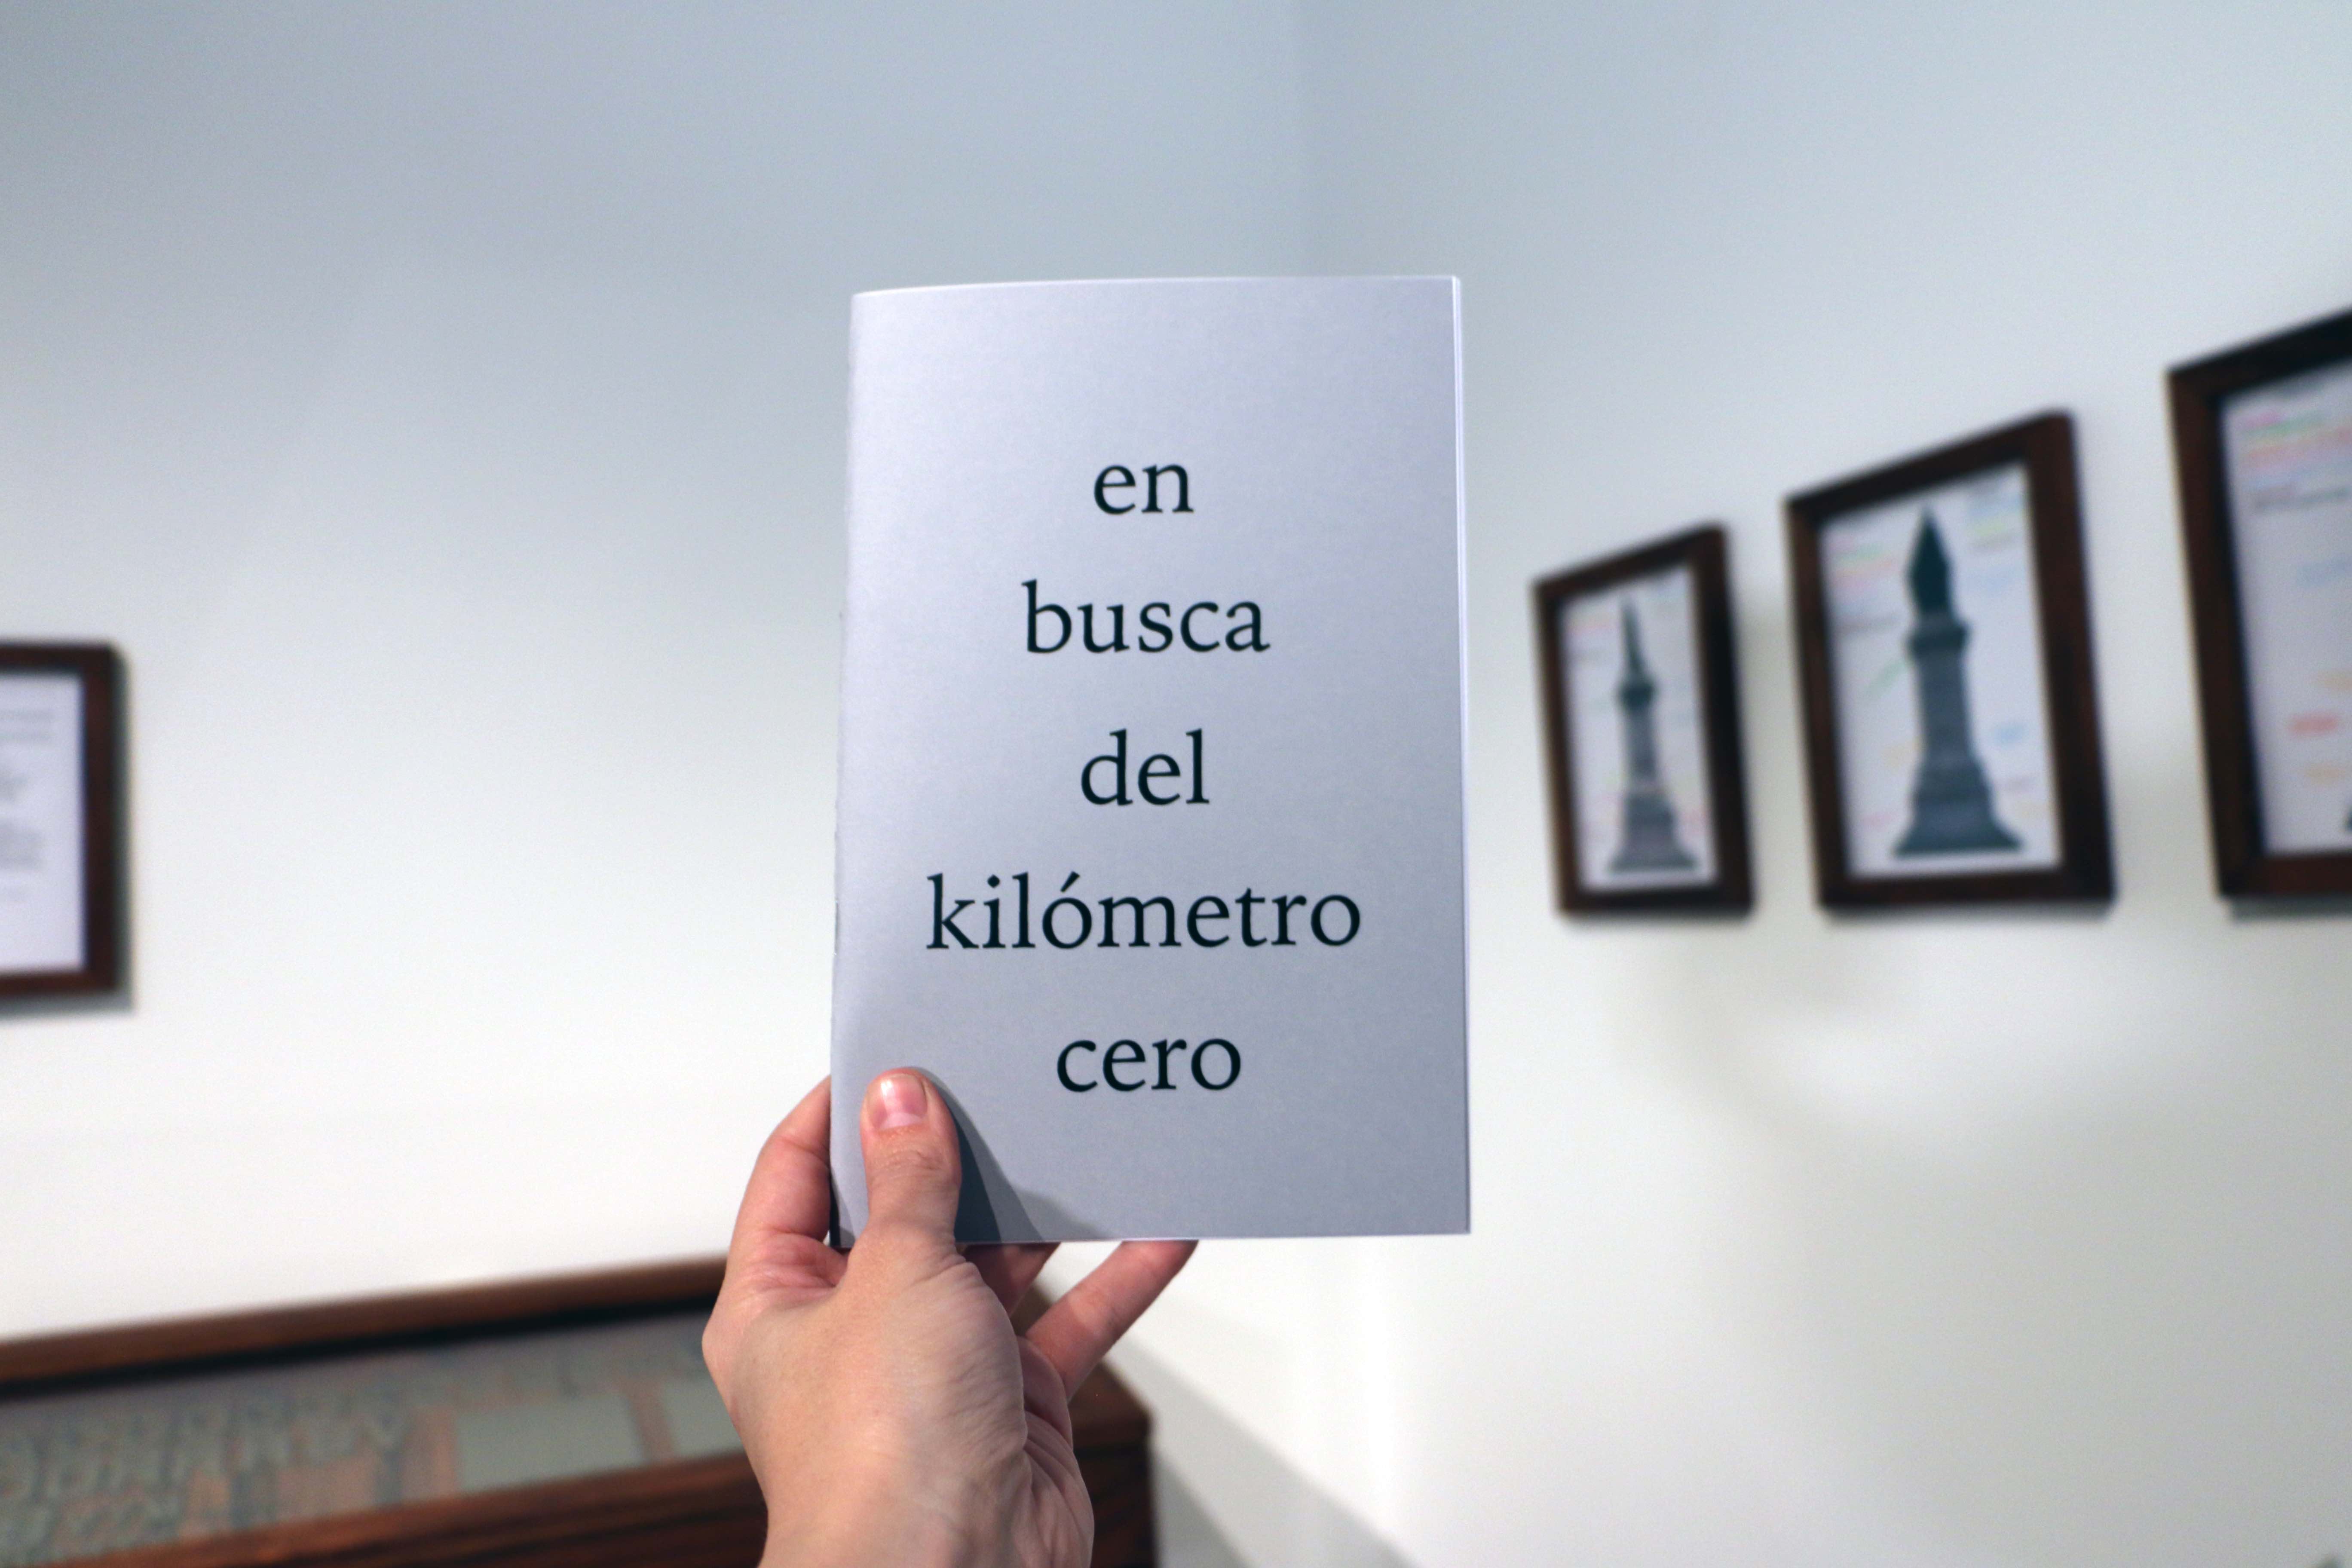 Carolina Magis Weinberg, En busca del kilómetro cero del proyecto “Principio de incertidumbre: en busca del kilómetro cero de México (2012-)”, 2019, Folleto, edición abierta
